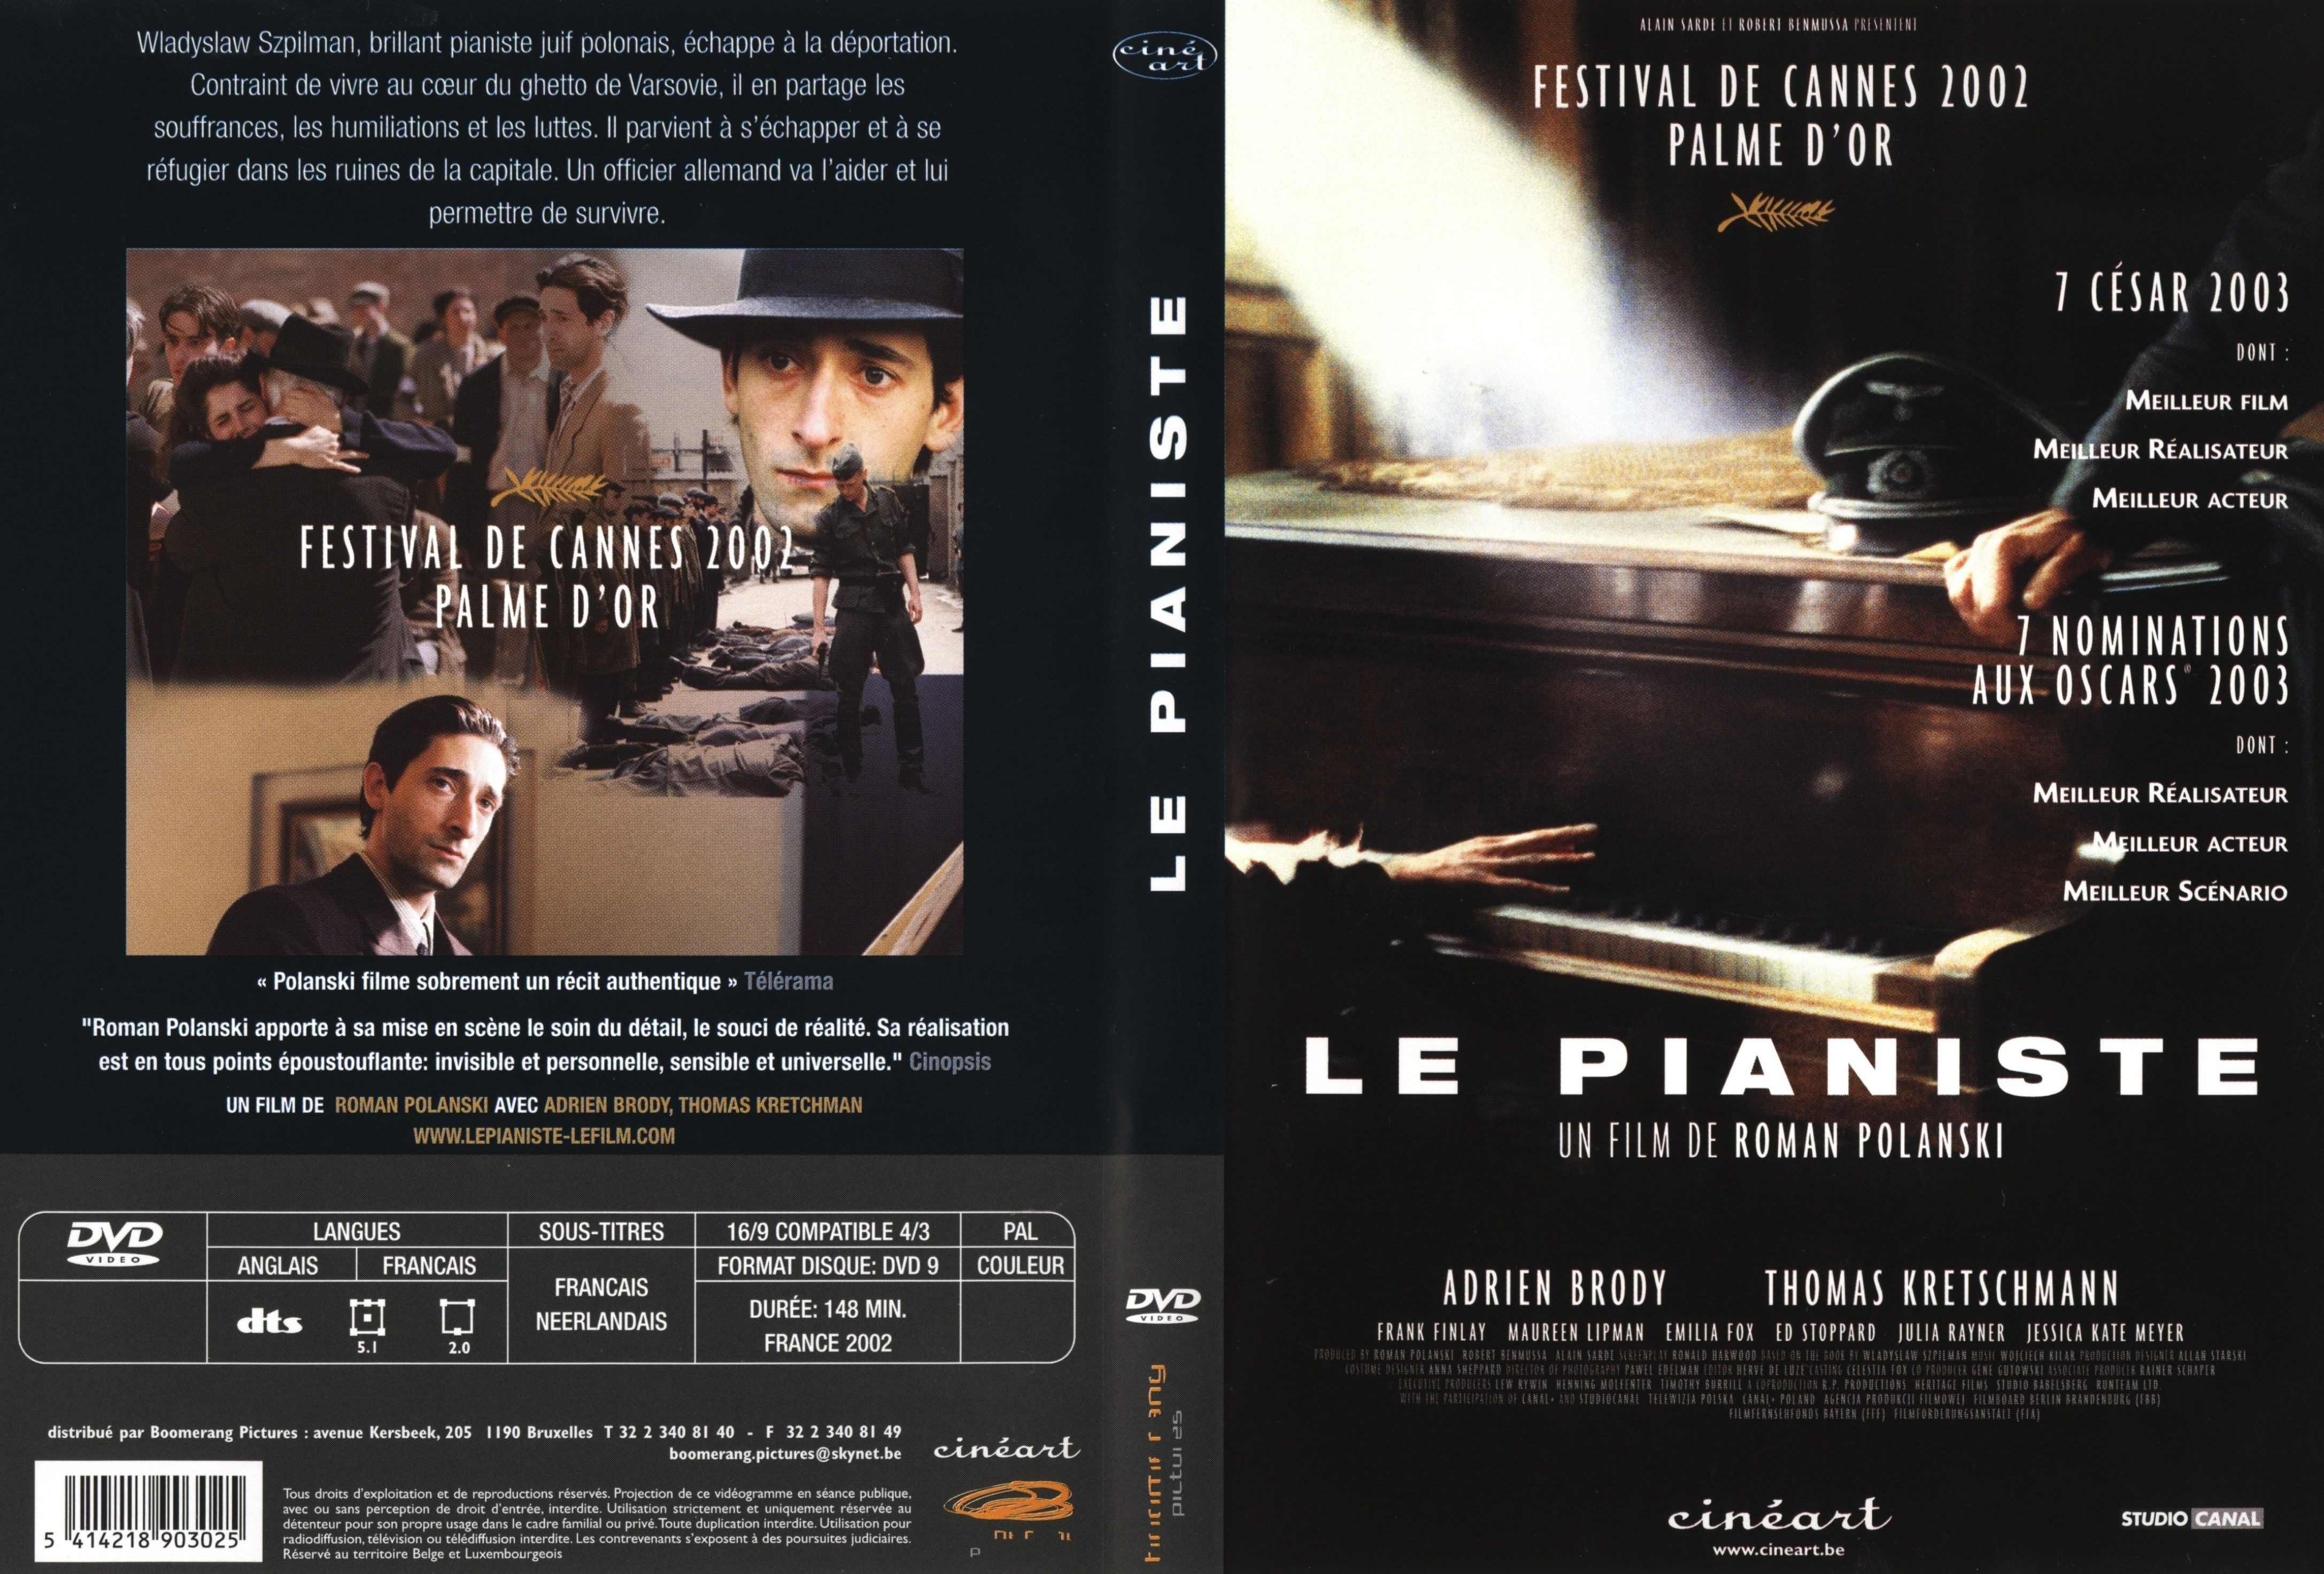 Jaquette DVD Le pianiste v2